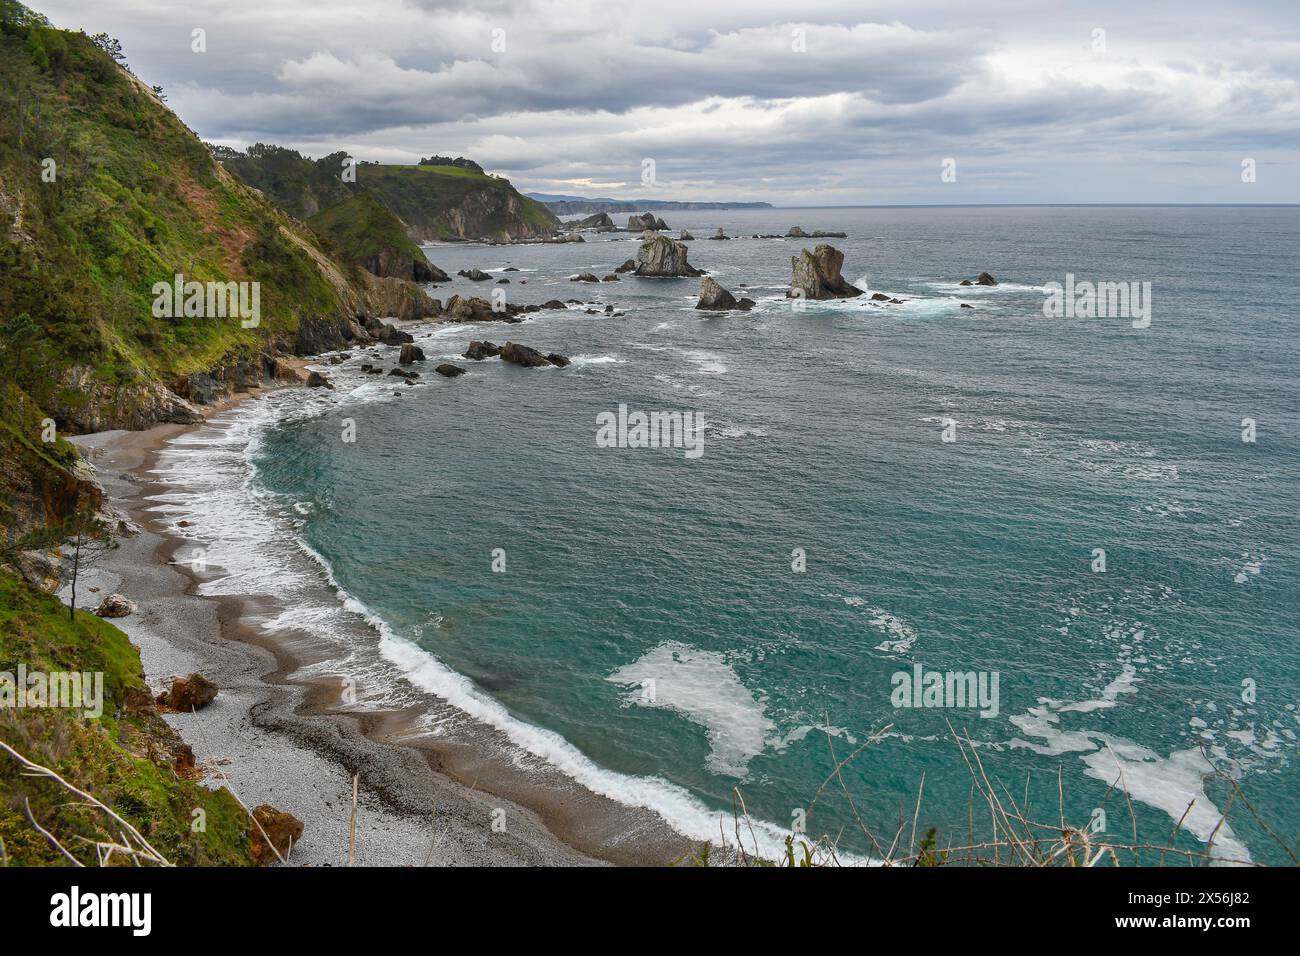 Panoramic view of Playa del silencio, Asturias Stock Photo